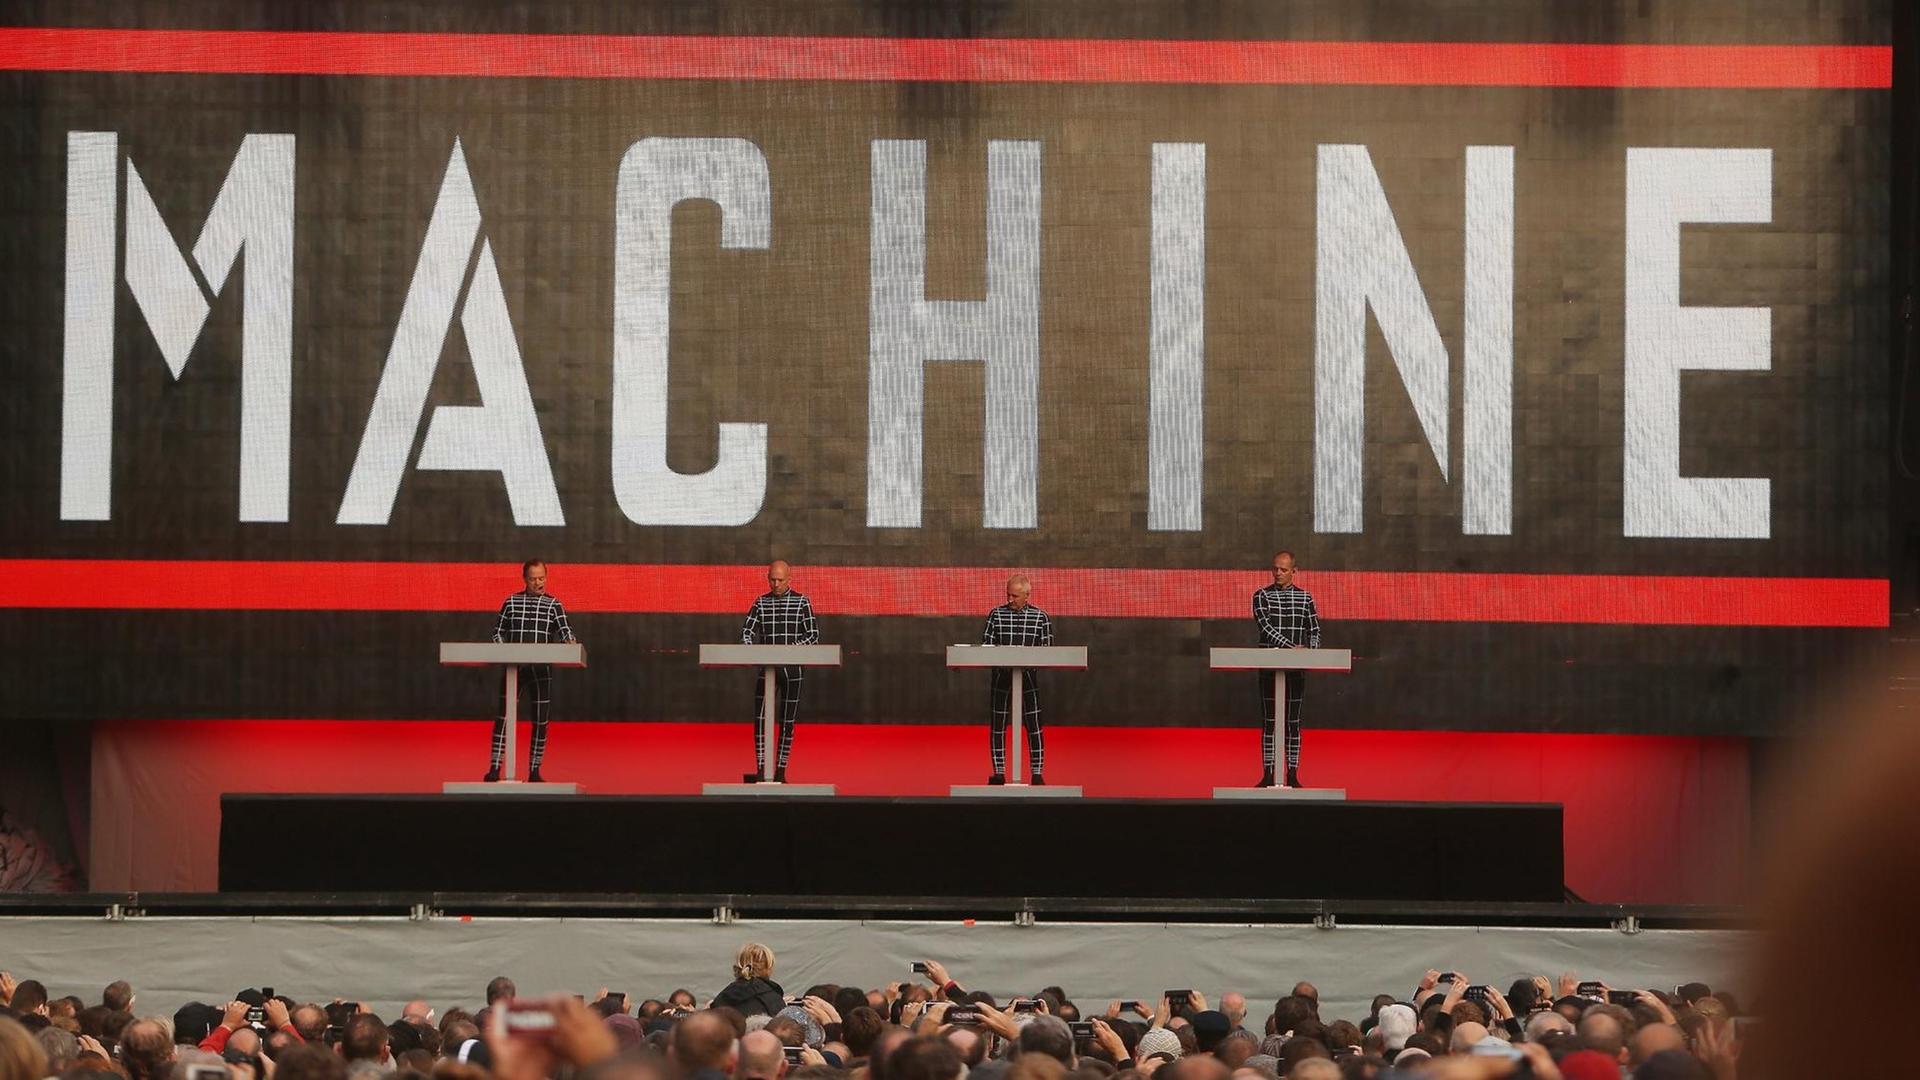 Die Elektro-Pop Band «Kraftwerk» tritt in Düsseldorf auf. Die vier Musiker stehen vor einem riesigen Schriftzug "Machine".